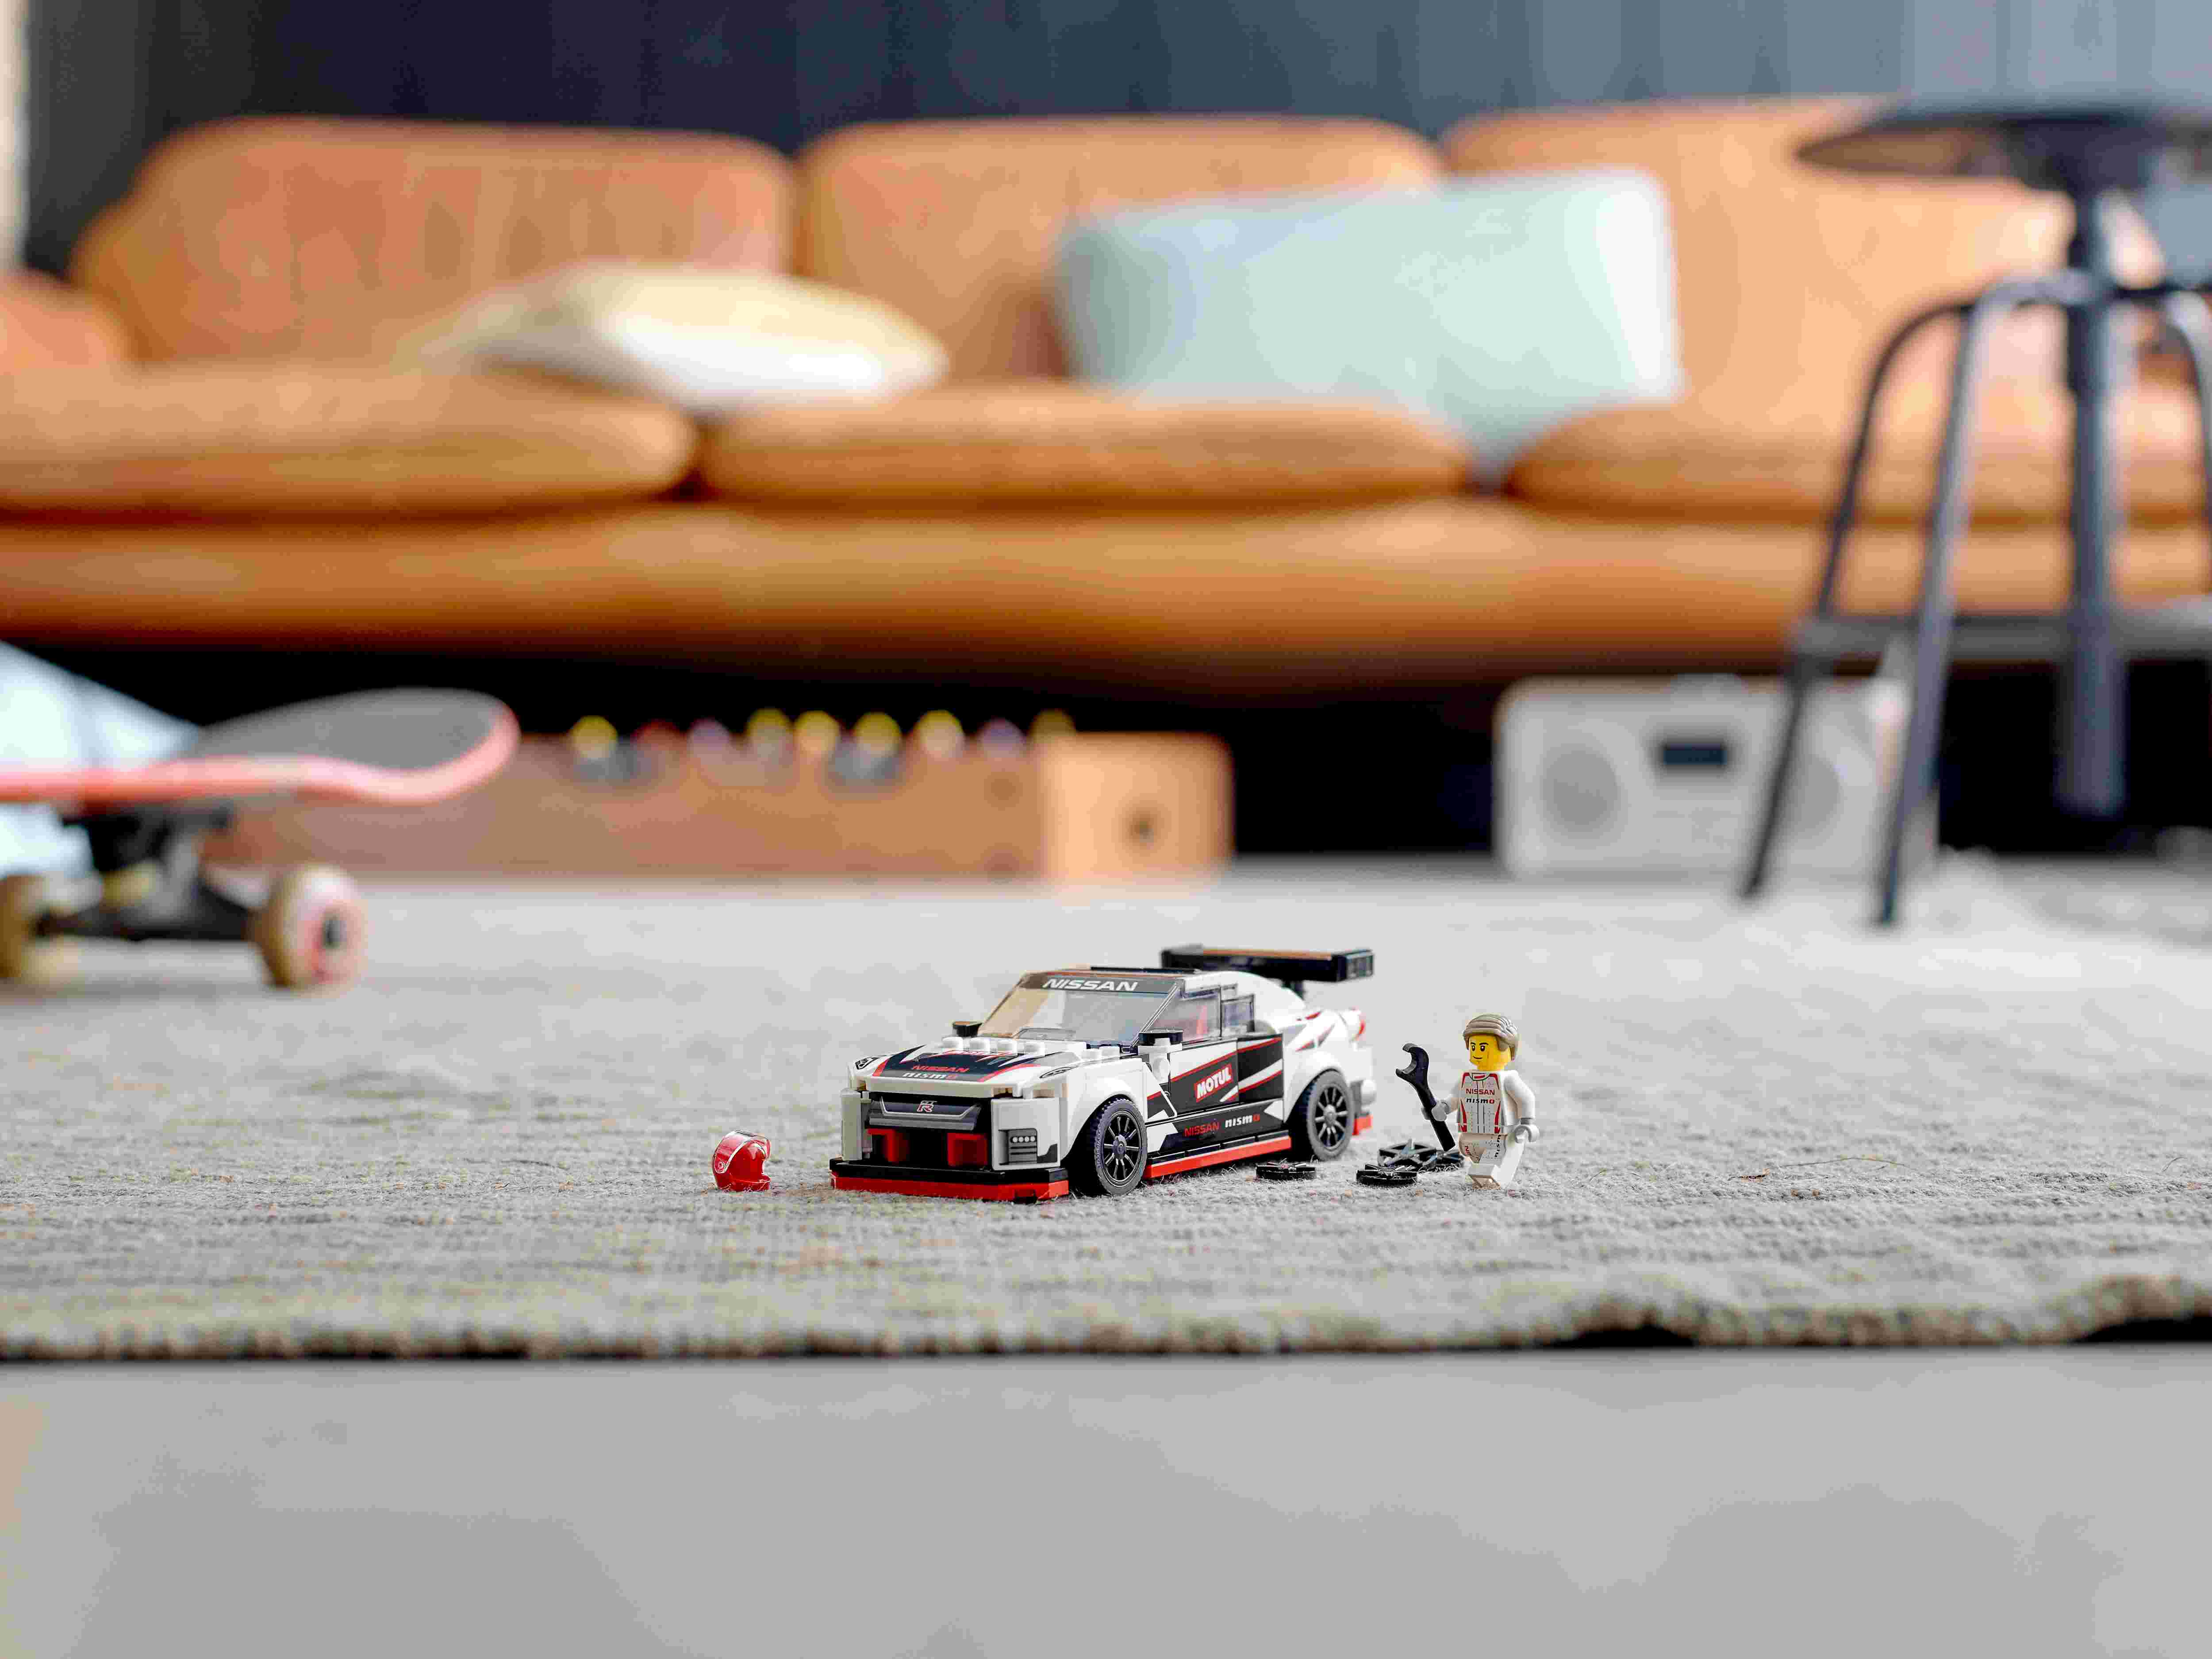 LEGO 76896 Speed Champions Nissan GT-R NISMO Rennwagenspielzeug mit Rennfahrer